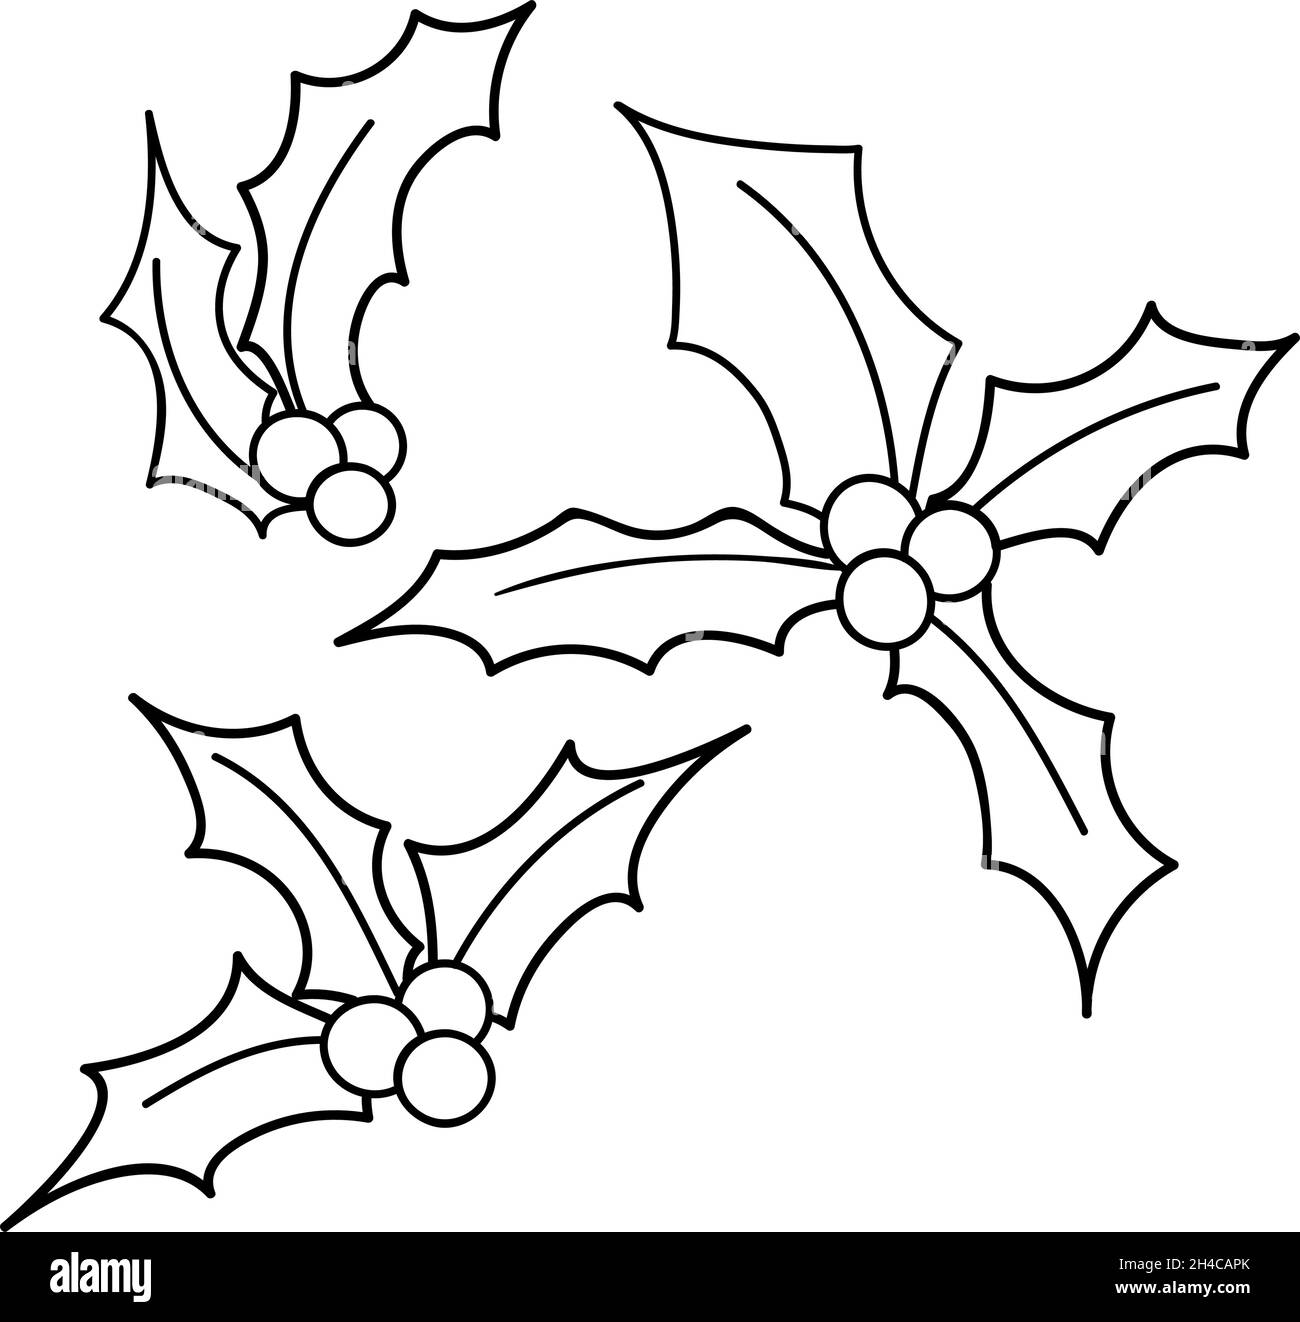 Holly Doodle vettore schizzi set di Natale. Collezione di illustrazioni fiori invernali. Vischio nero illustrazione trendy isolato su sfondo bianco Illustrazione Vettoriale